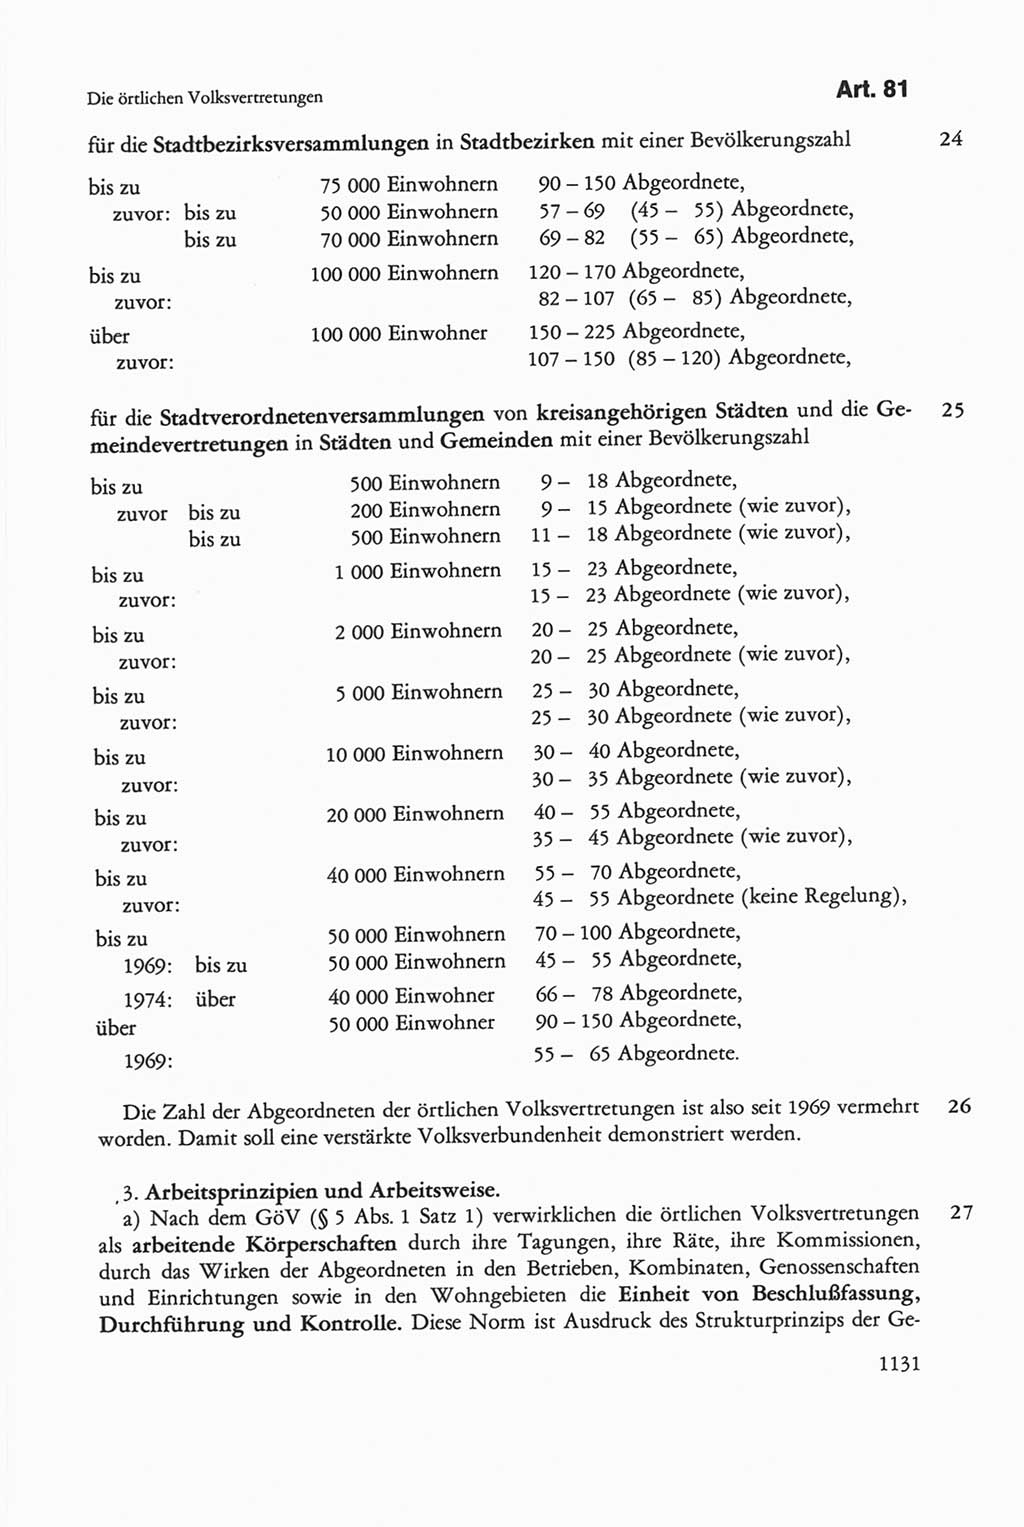 Die sozialistische Verfassung der Deutschen Demokratischen Republik (DDR), Kommentar mit einem Nachtrag 1997, Seite 1131 (Soz. Verf. DDR Komm. Nachtr. 1997, S. 1131)